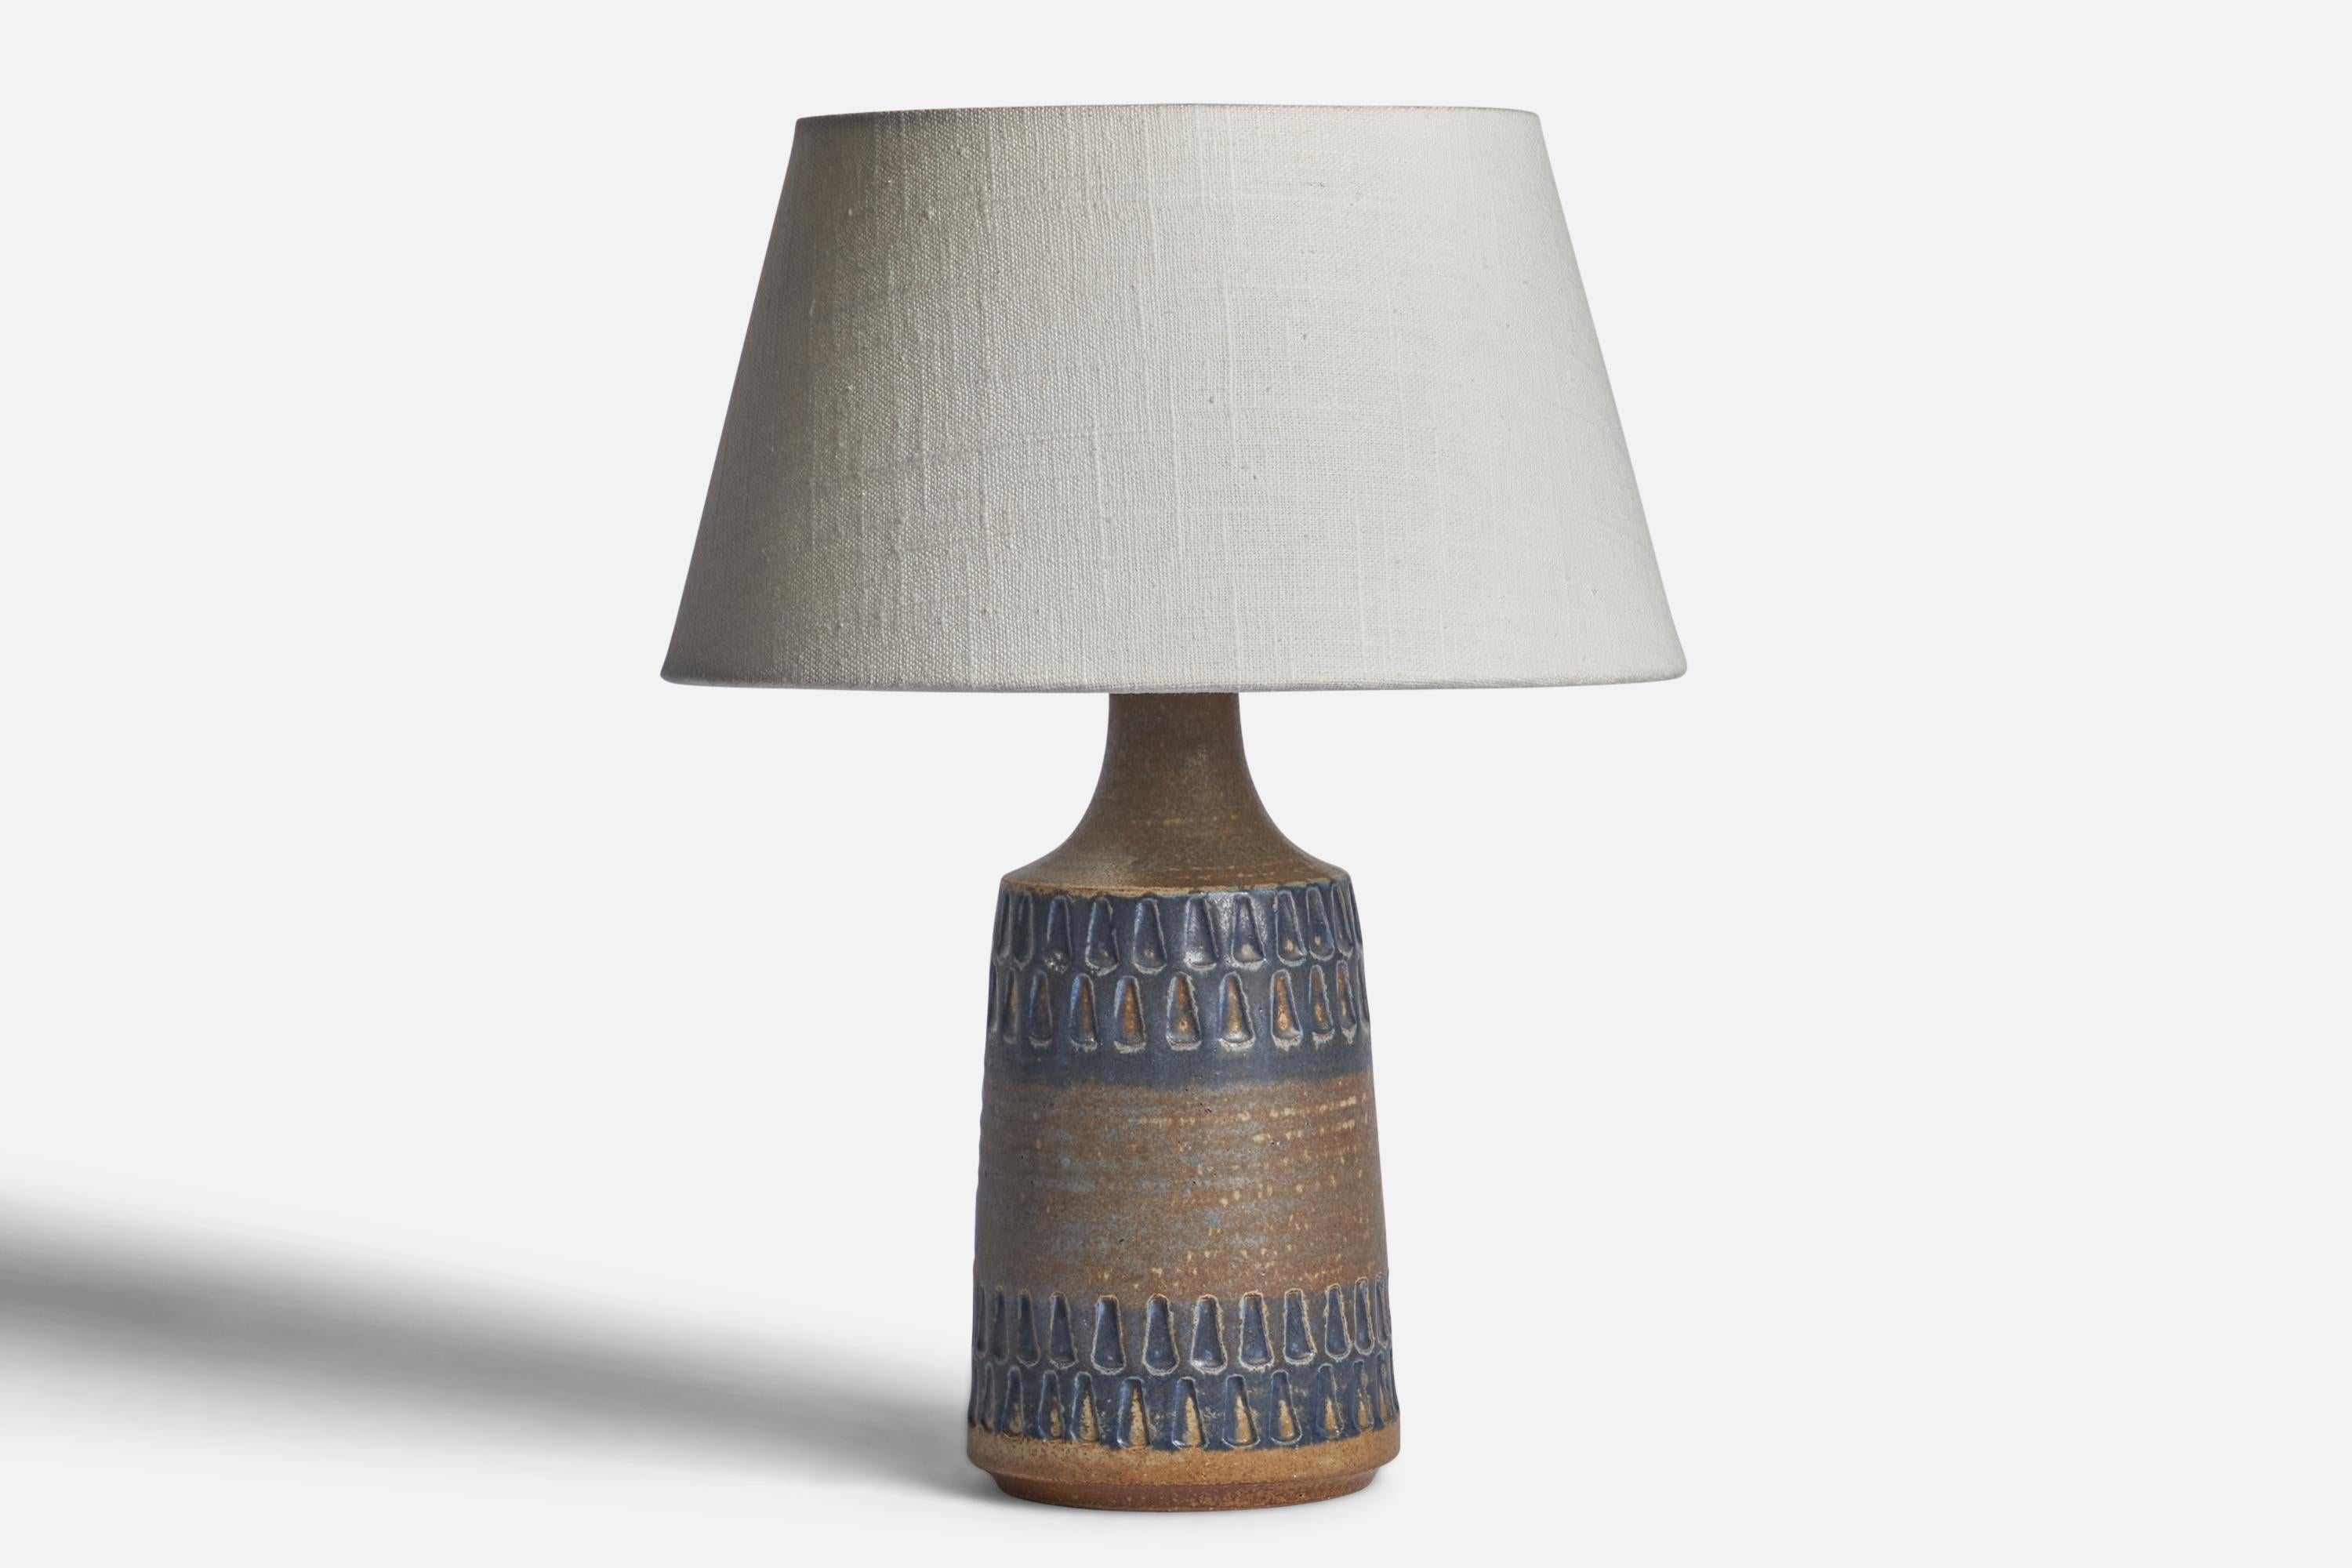 Tischleuchte aus blauem und grau glasiertem Steingut, entworfen und hergestellt von 
Søholm, Bornholm, Dänemark, 1960er Jahre.

Abmessungen der Lampe (Zoll): 10,5